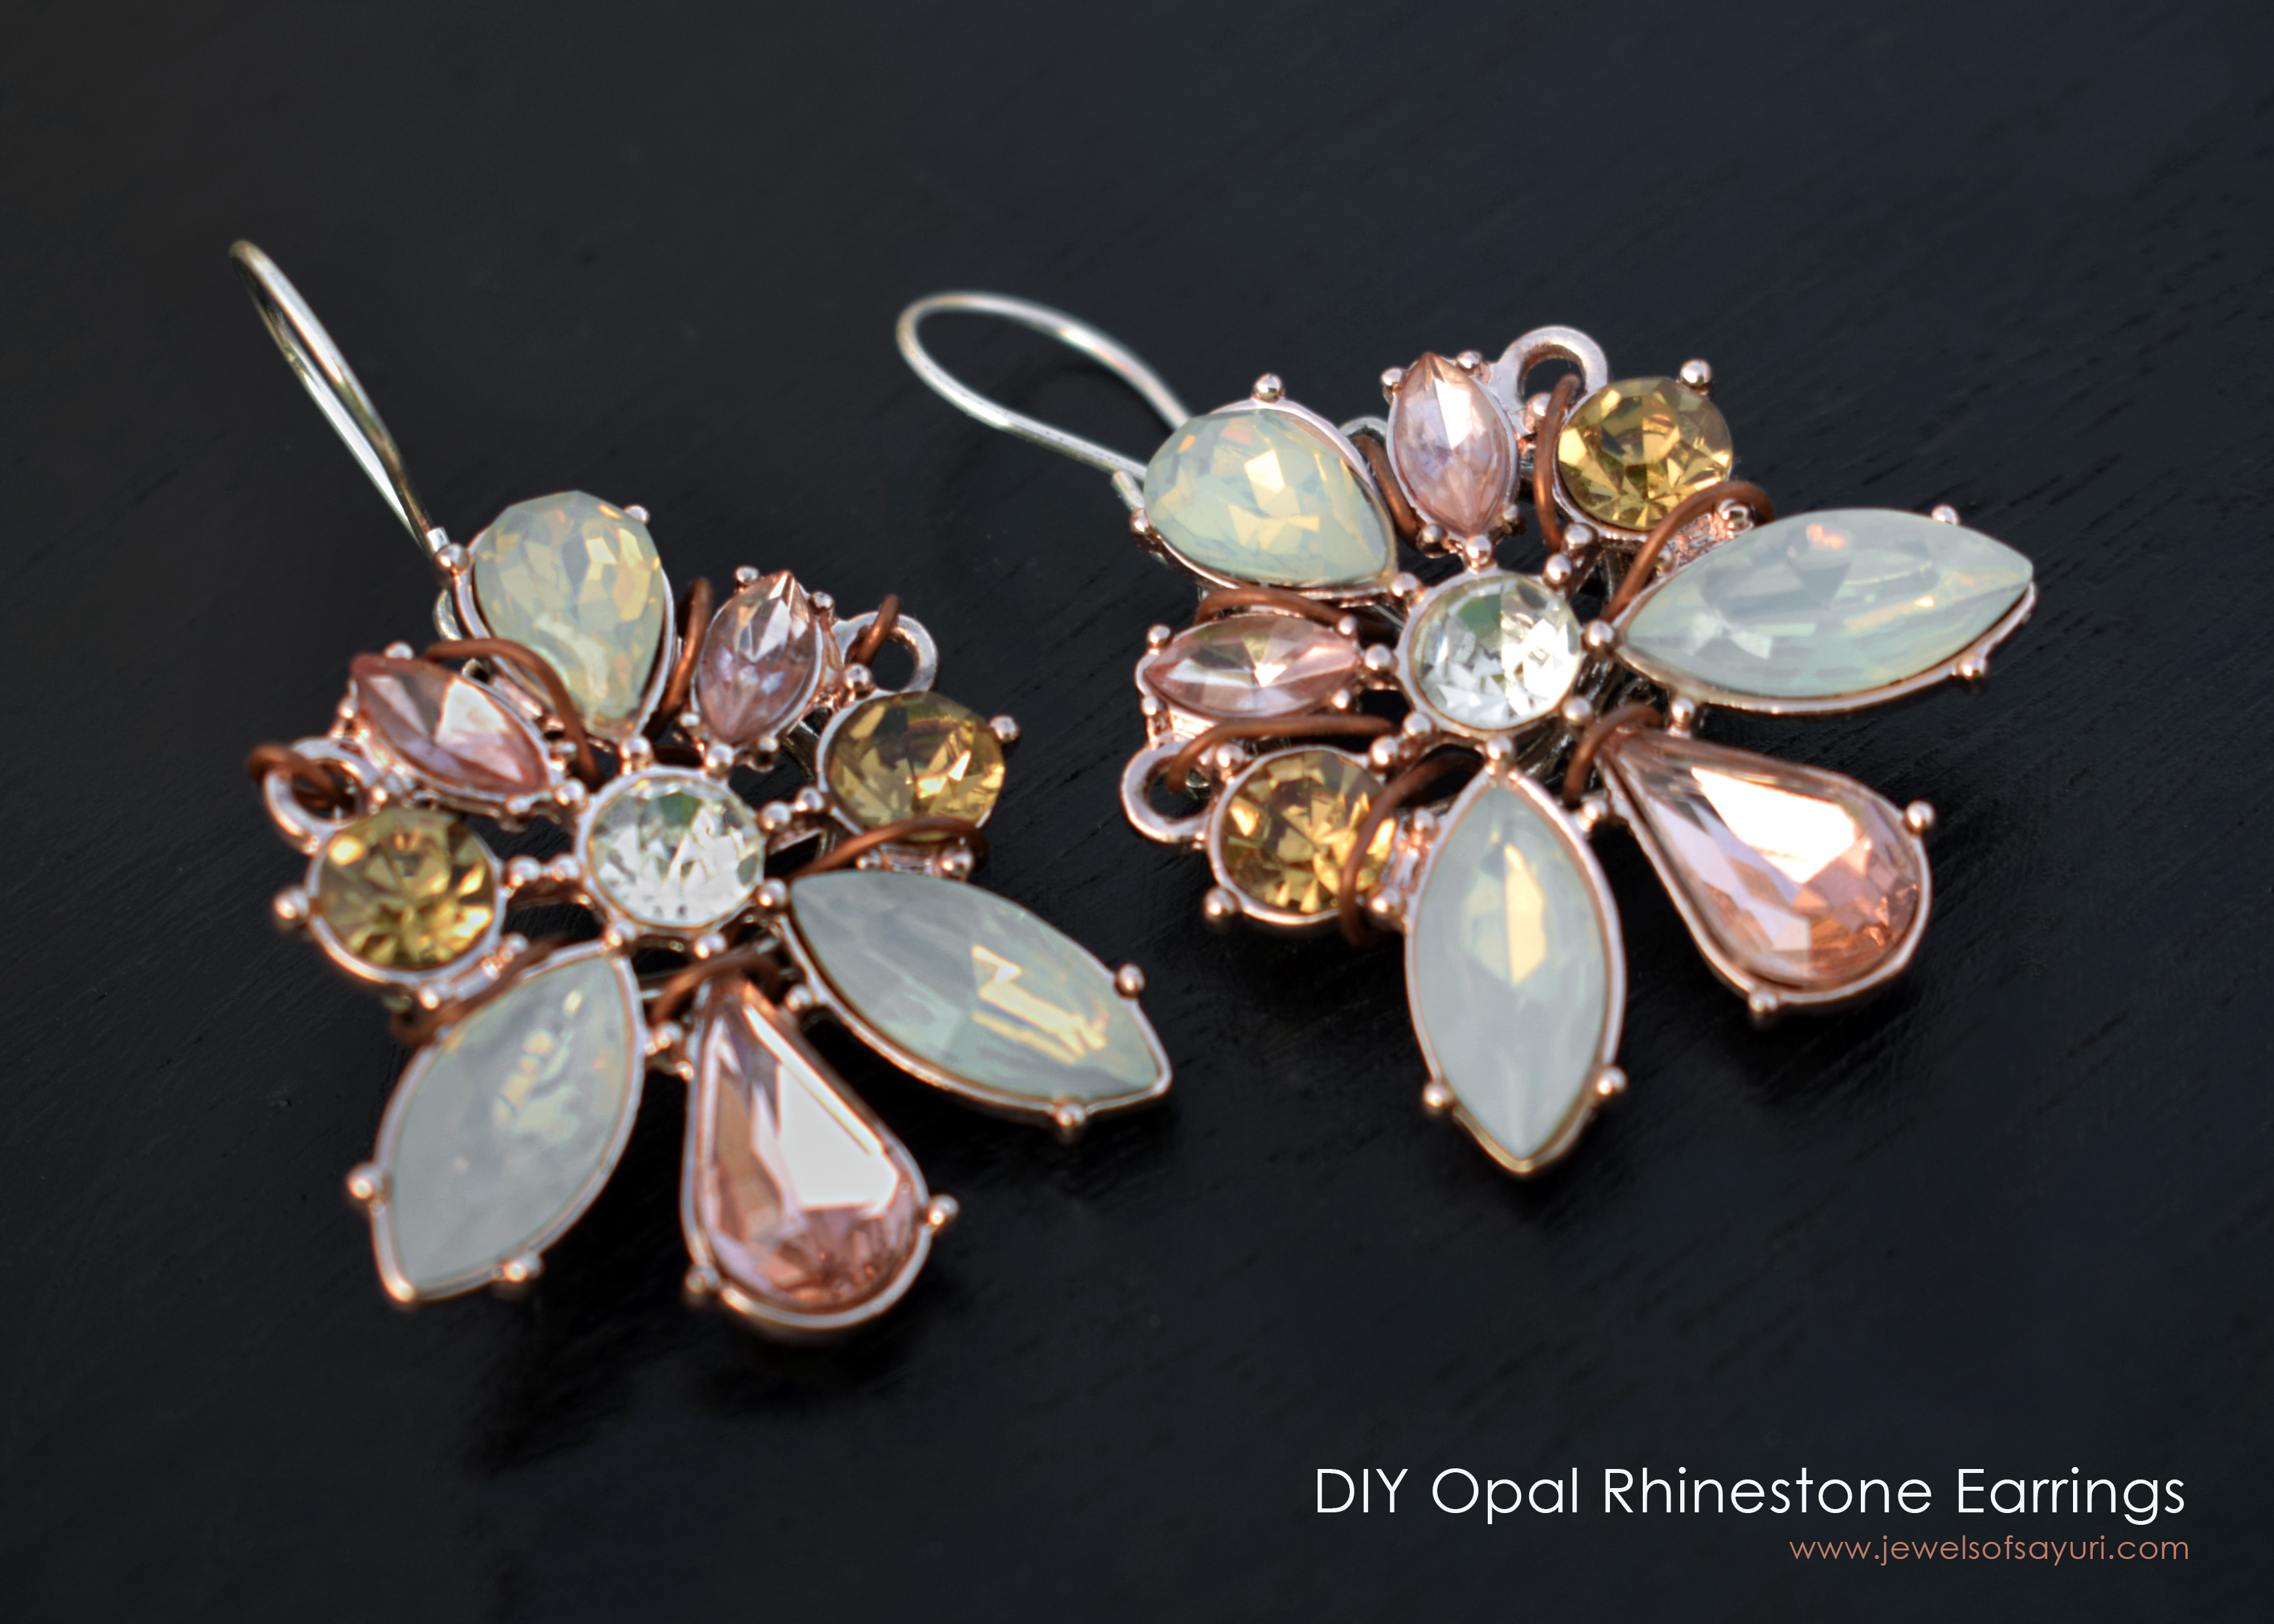 DIY Opal Rhinestone Earrings tutorial